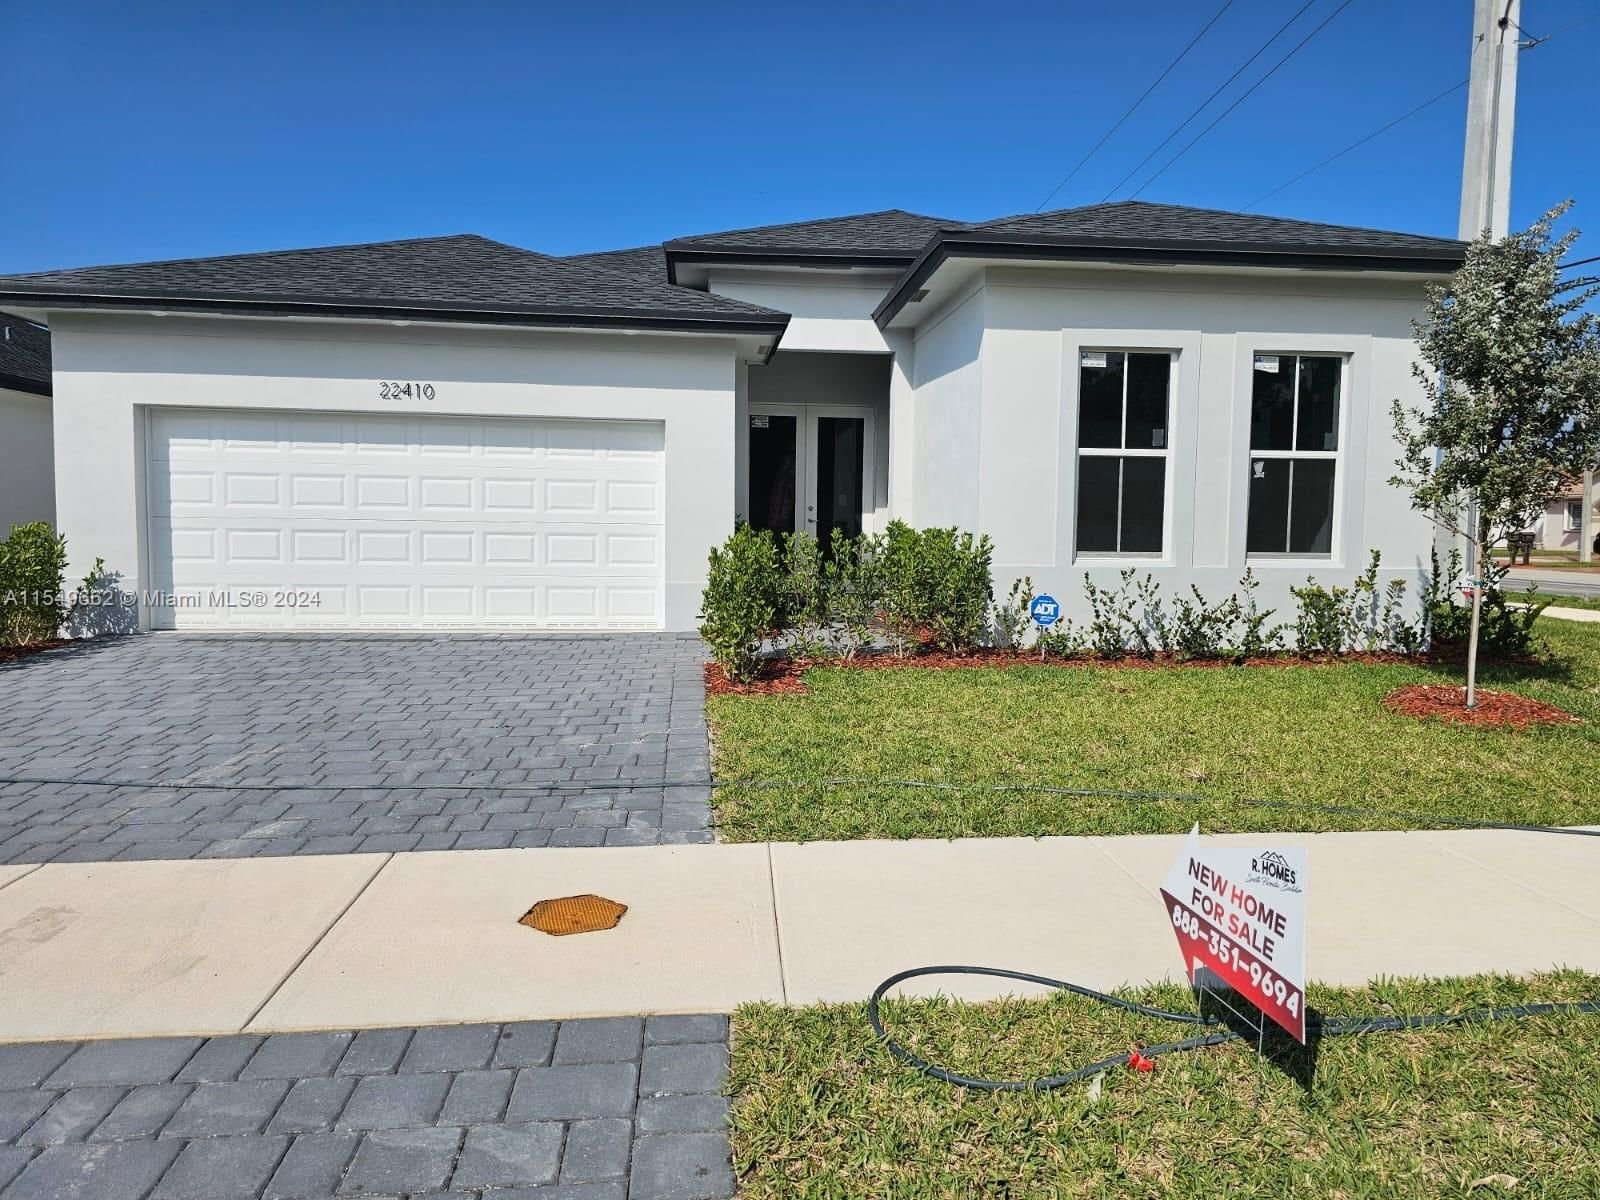 Real estate property located at 22570 125 AVE, Miami-Dade County, CHLOE'S ESTATES, Miami, FL